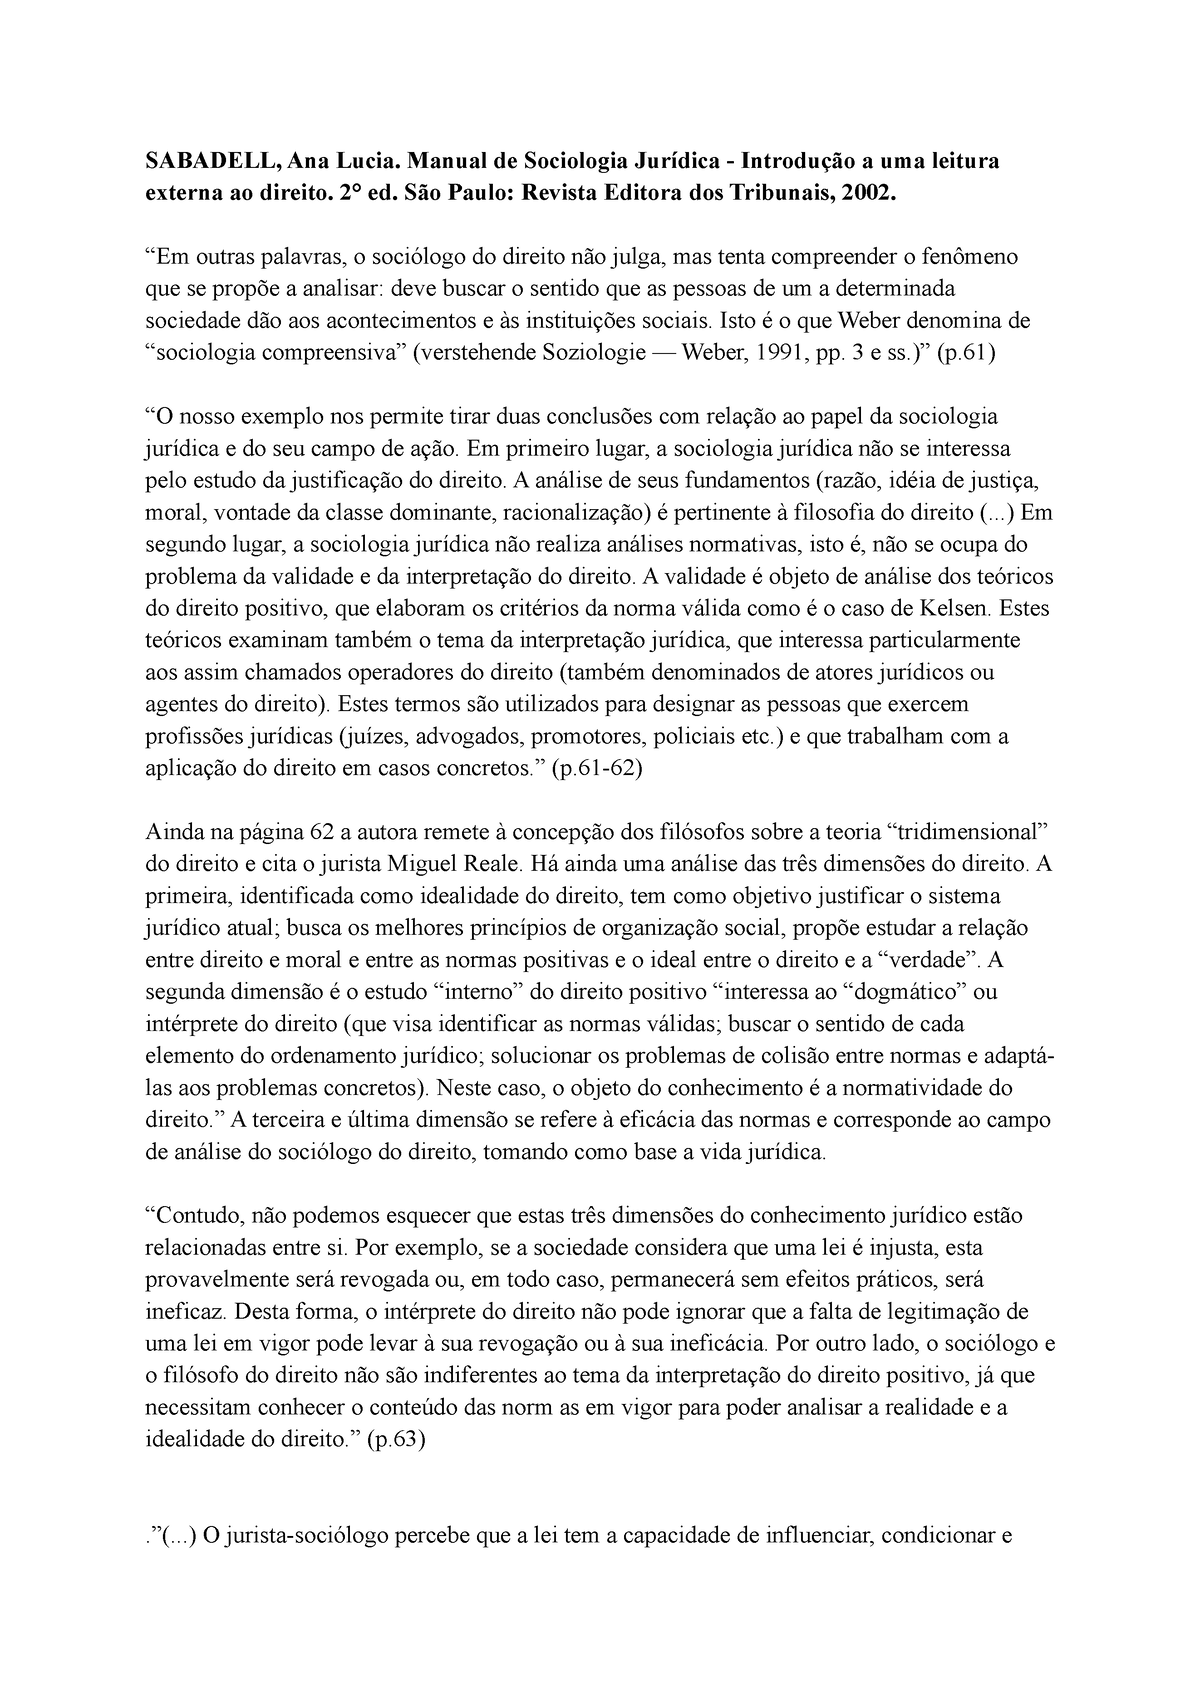 Fichamento Manual De Sociologia Jurídica Sabadell Ana Lucia Manual De Sociologia Jurídica 8301